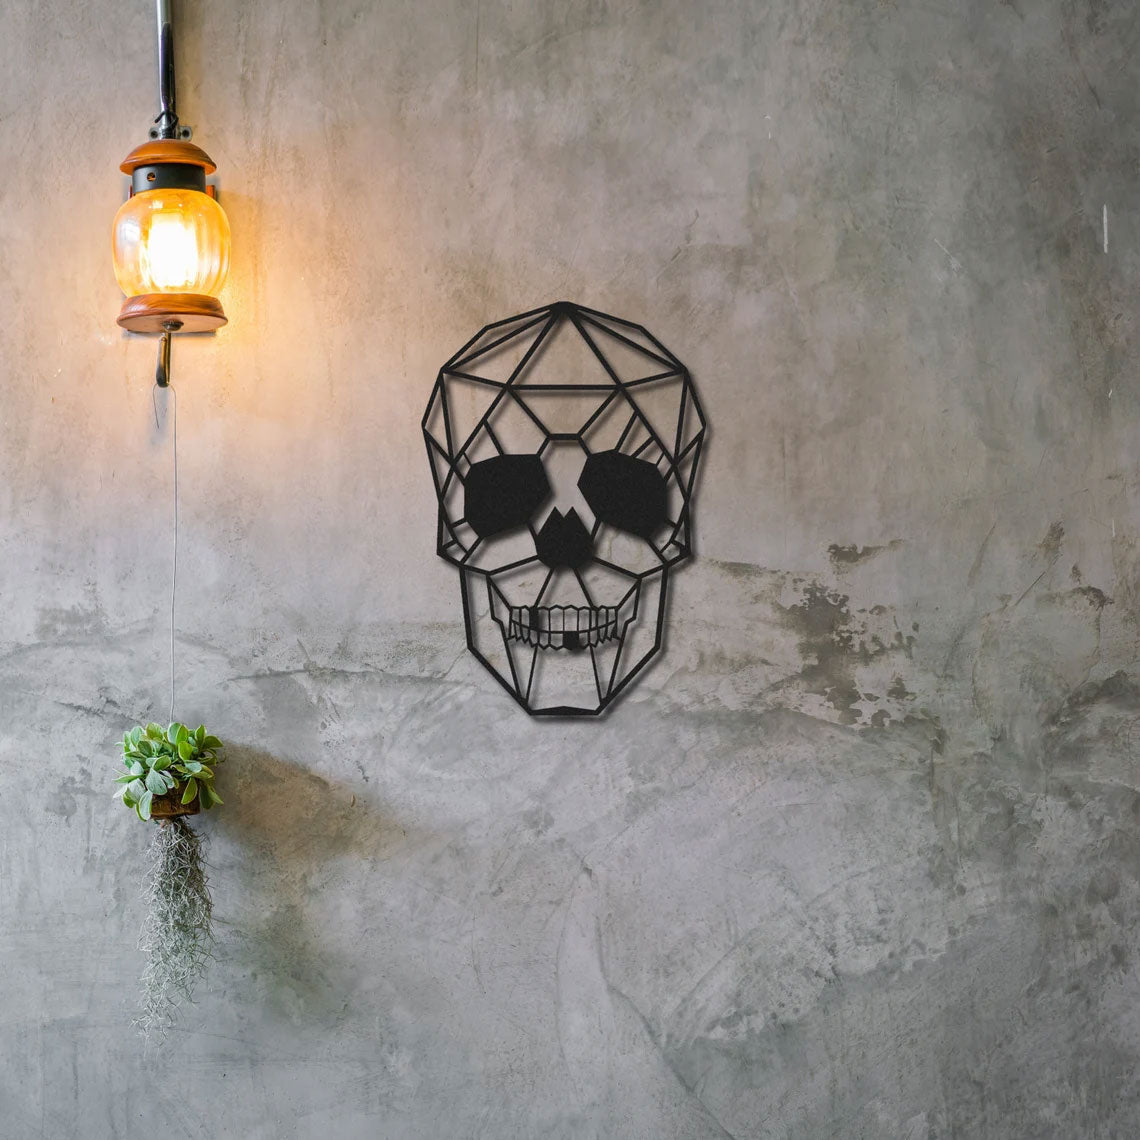 Crâne - Décoration murale en métal tendance